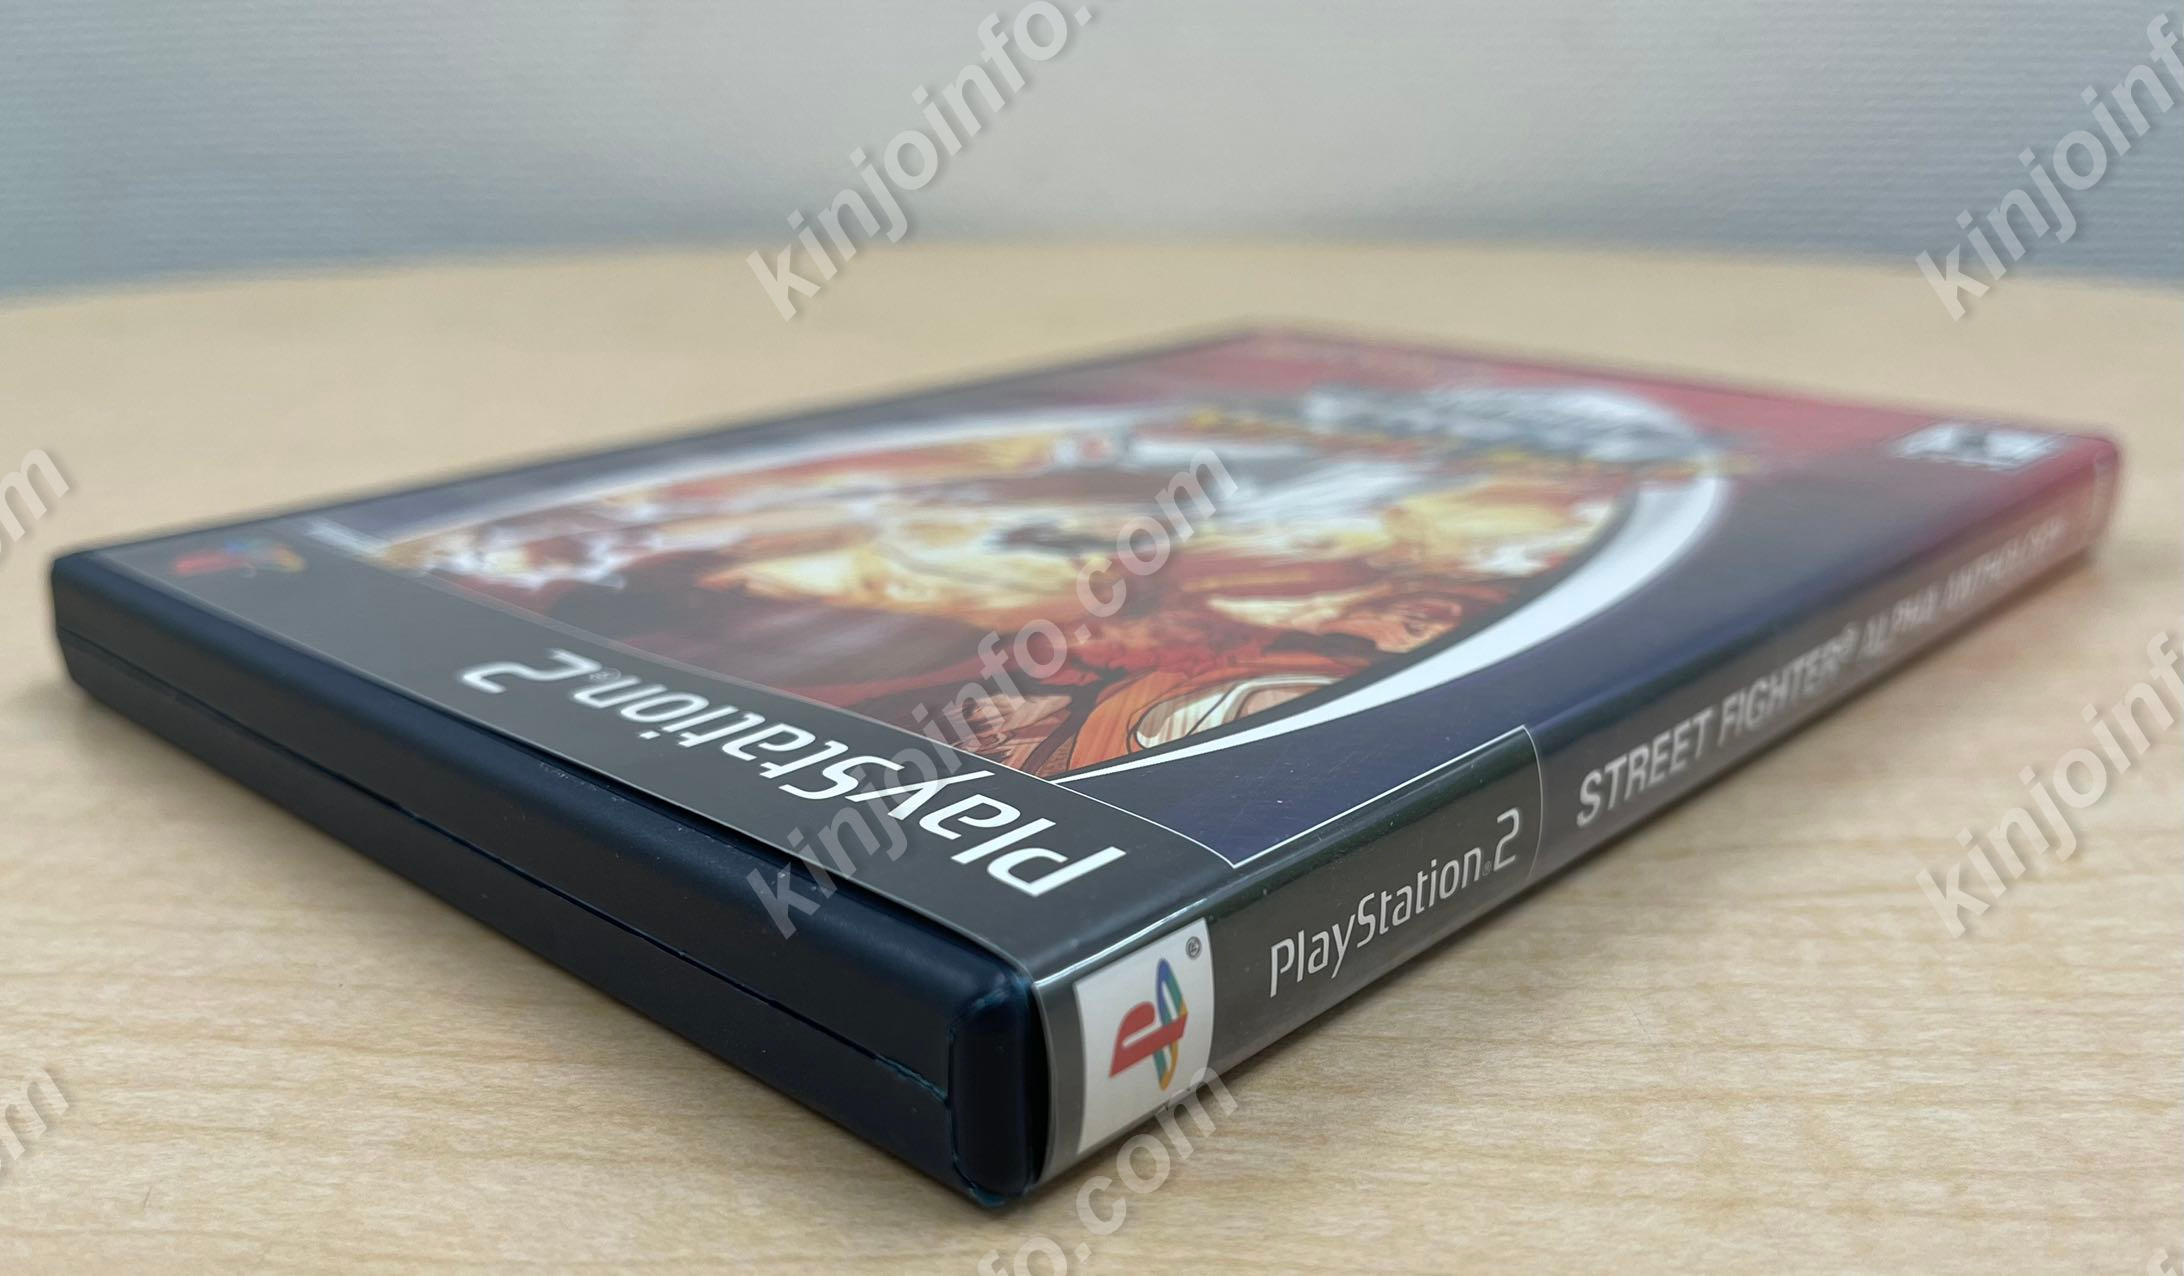 Street Fighter Alpha Anthology（ストリートファイターZERO 